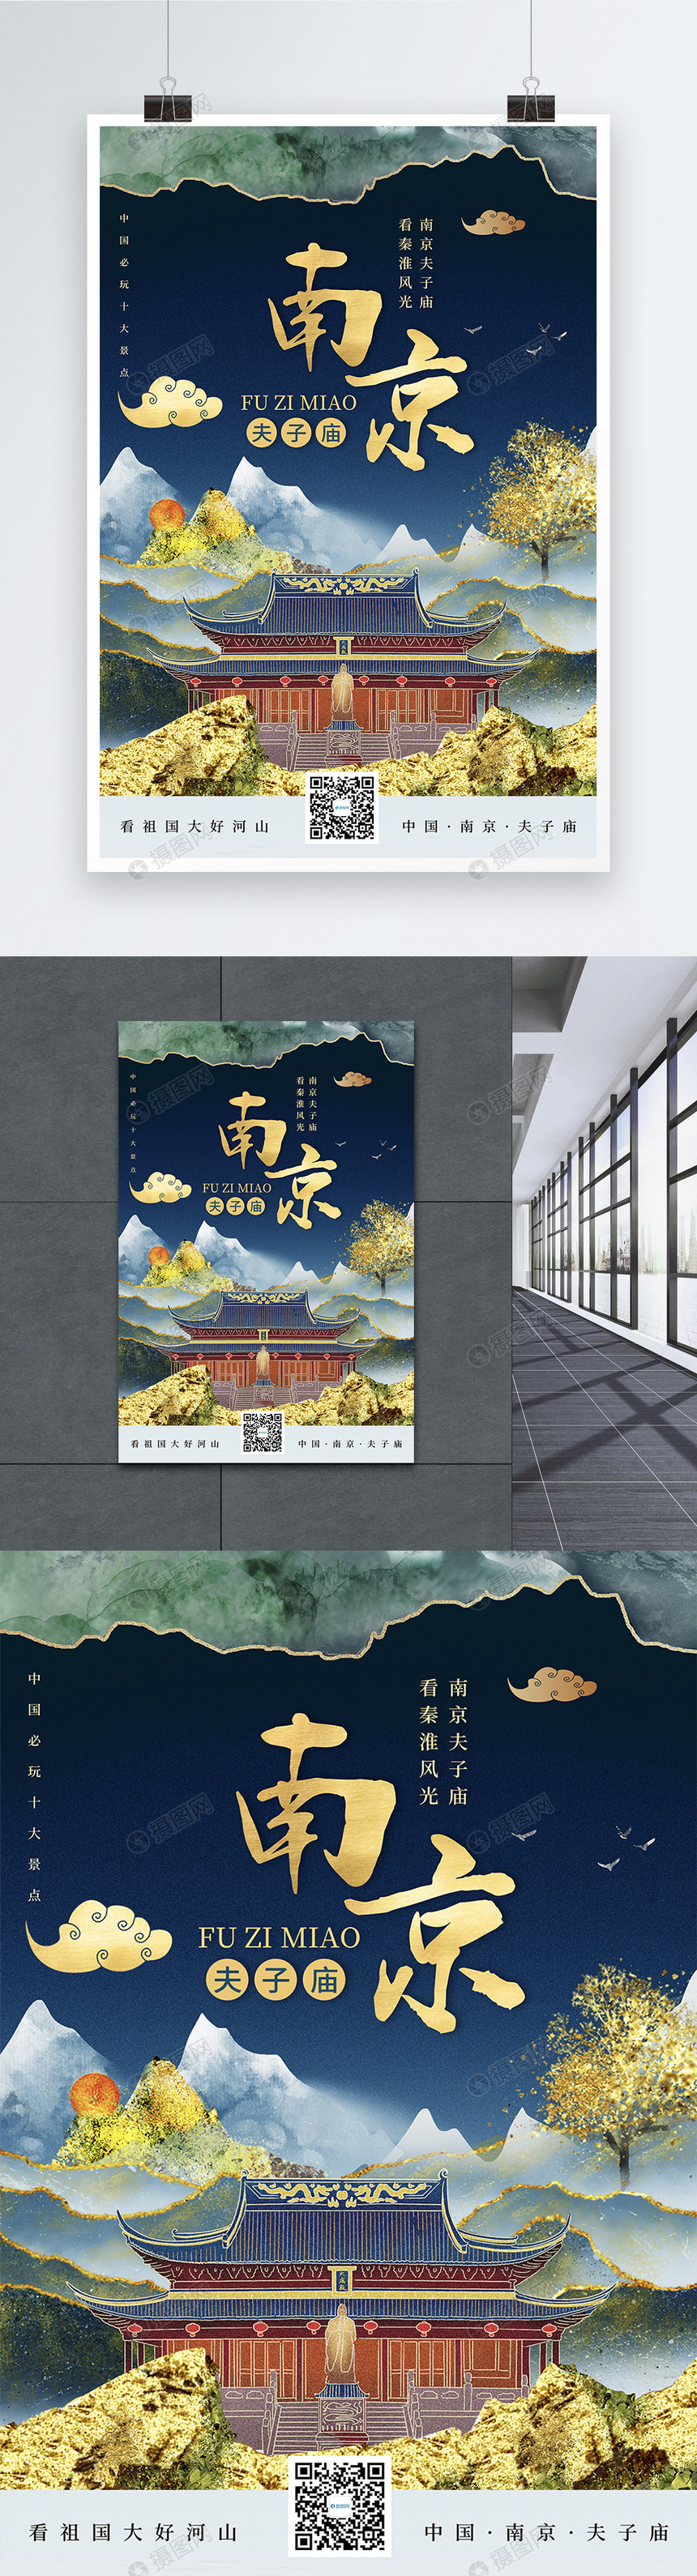 时尚大气鎏金风南京城市宣传旅游海报图片